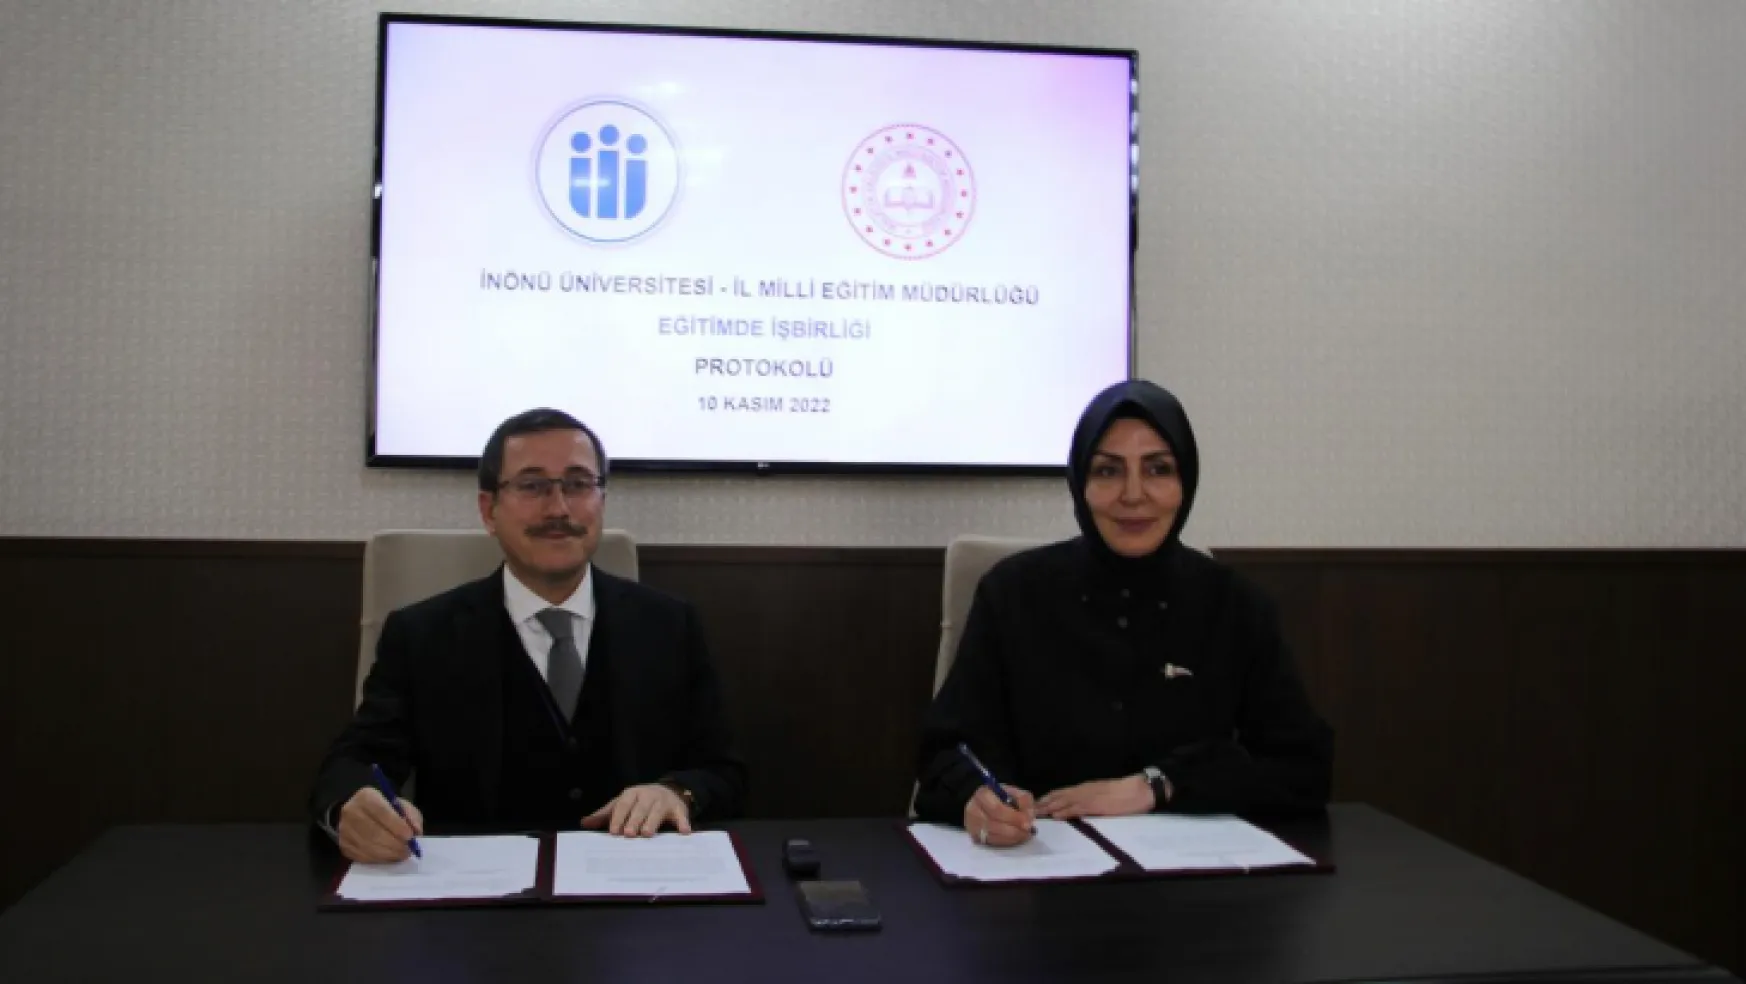 İnönü Üniversitesi İle Malatya İl Milli Eğitim Müdürlüğü Arasında Protokol İmzalandı